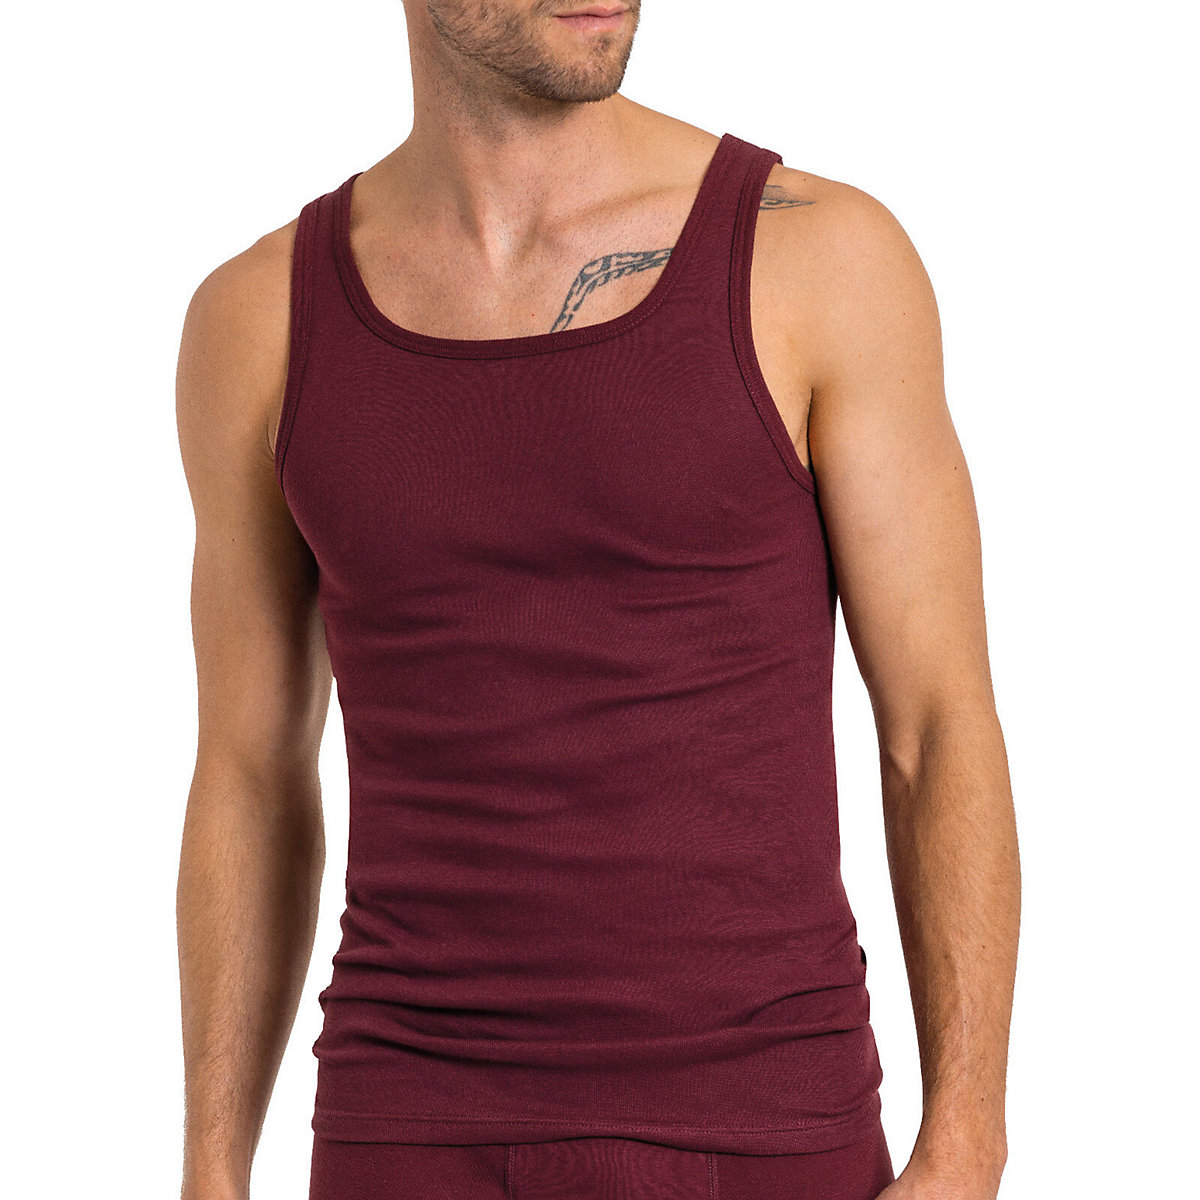 Kumpf Body Fashion 4er Sparpack Herren Unterhemd Bio Cotton Unterhemden schwarz/rot